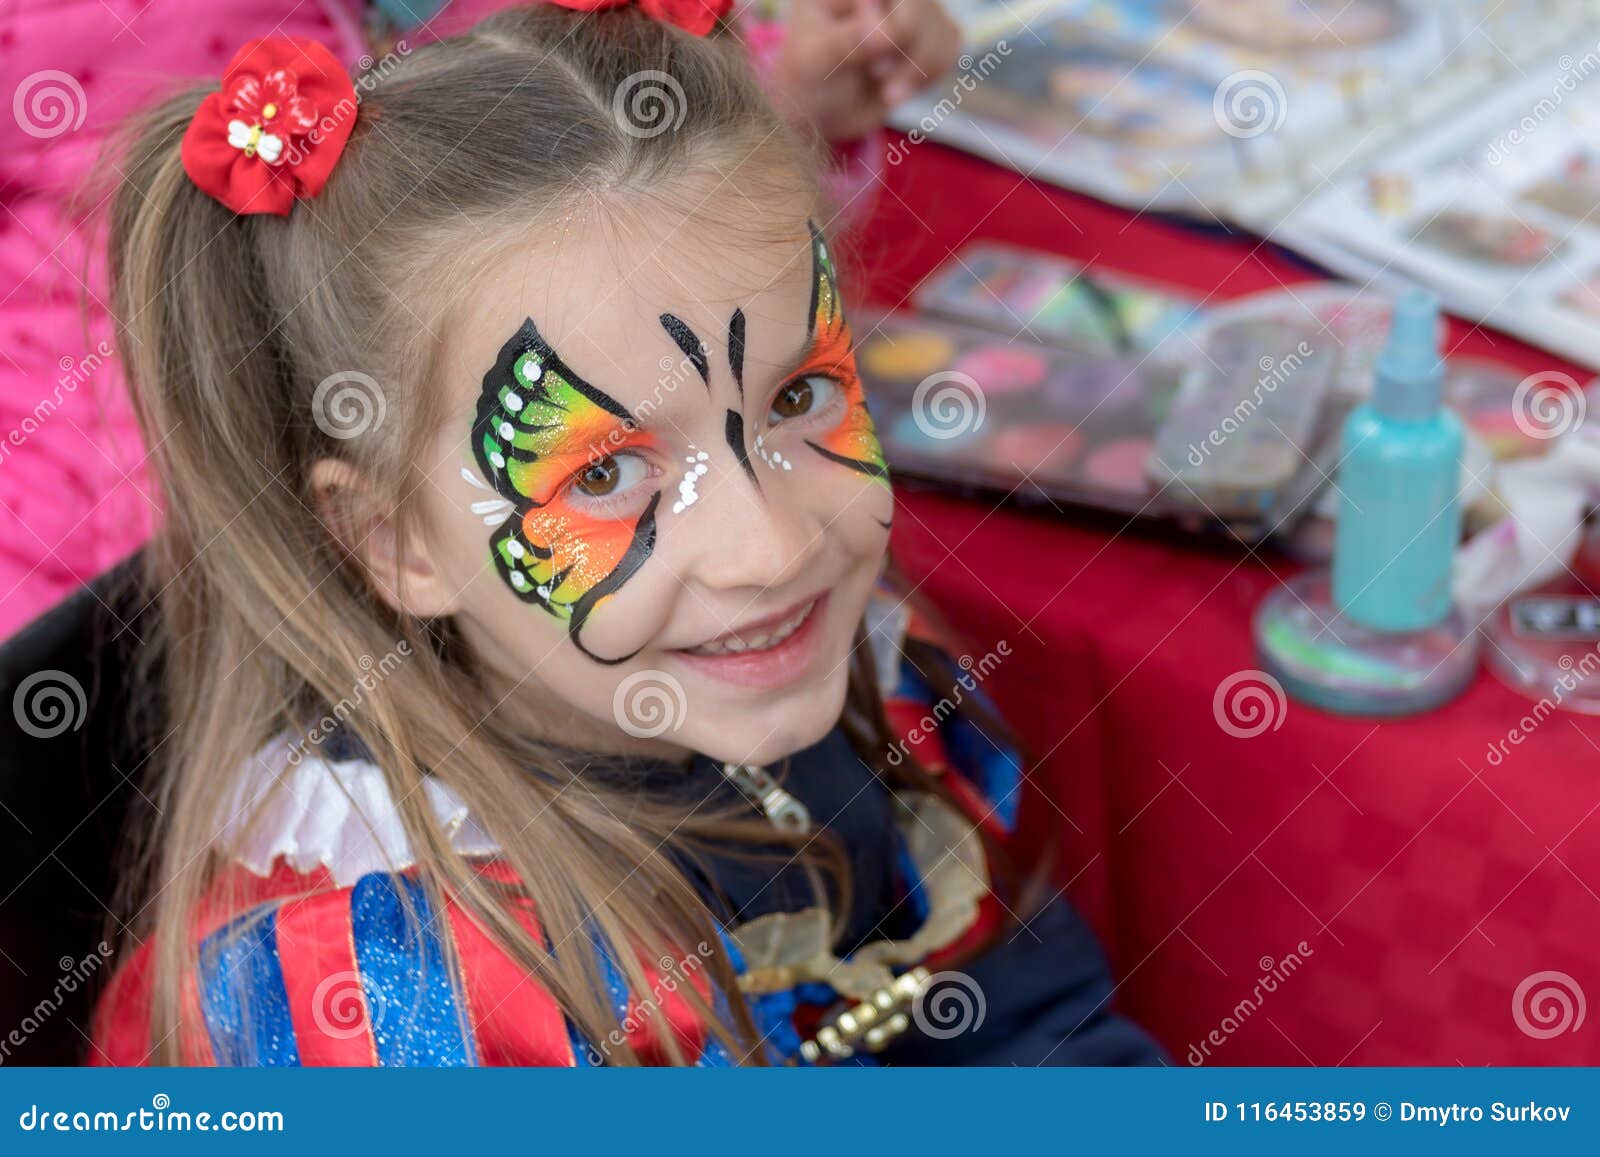 Maquillage Enfant Imágenes y Fotos - 123RF